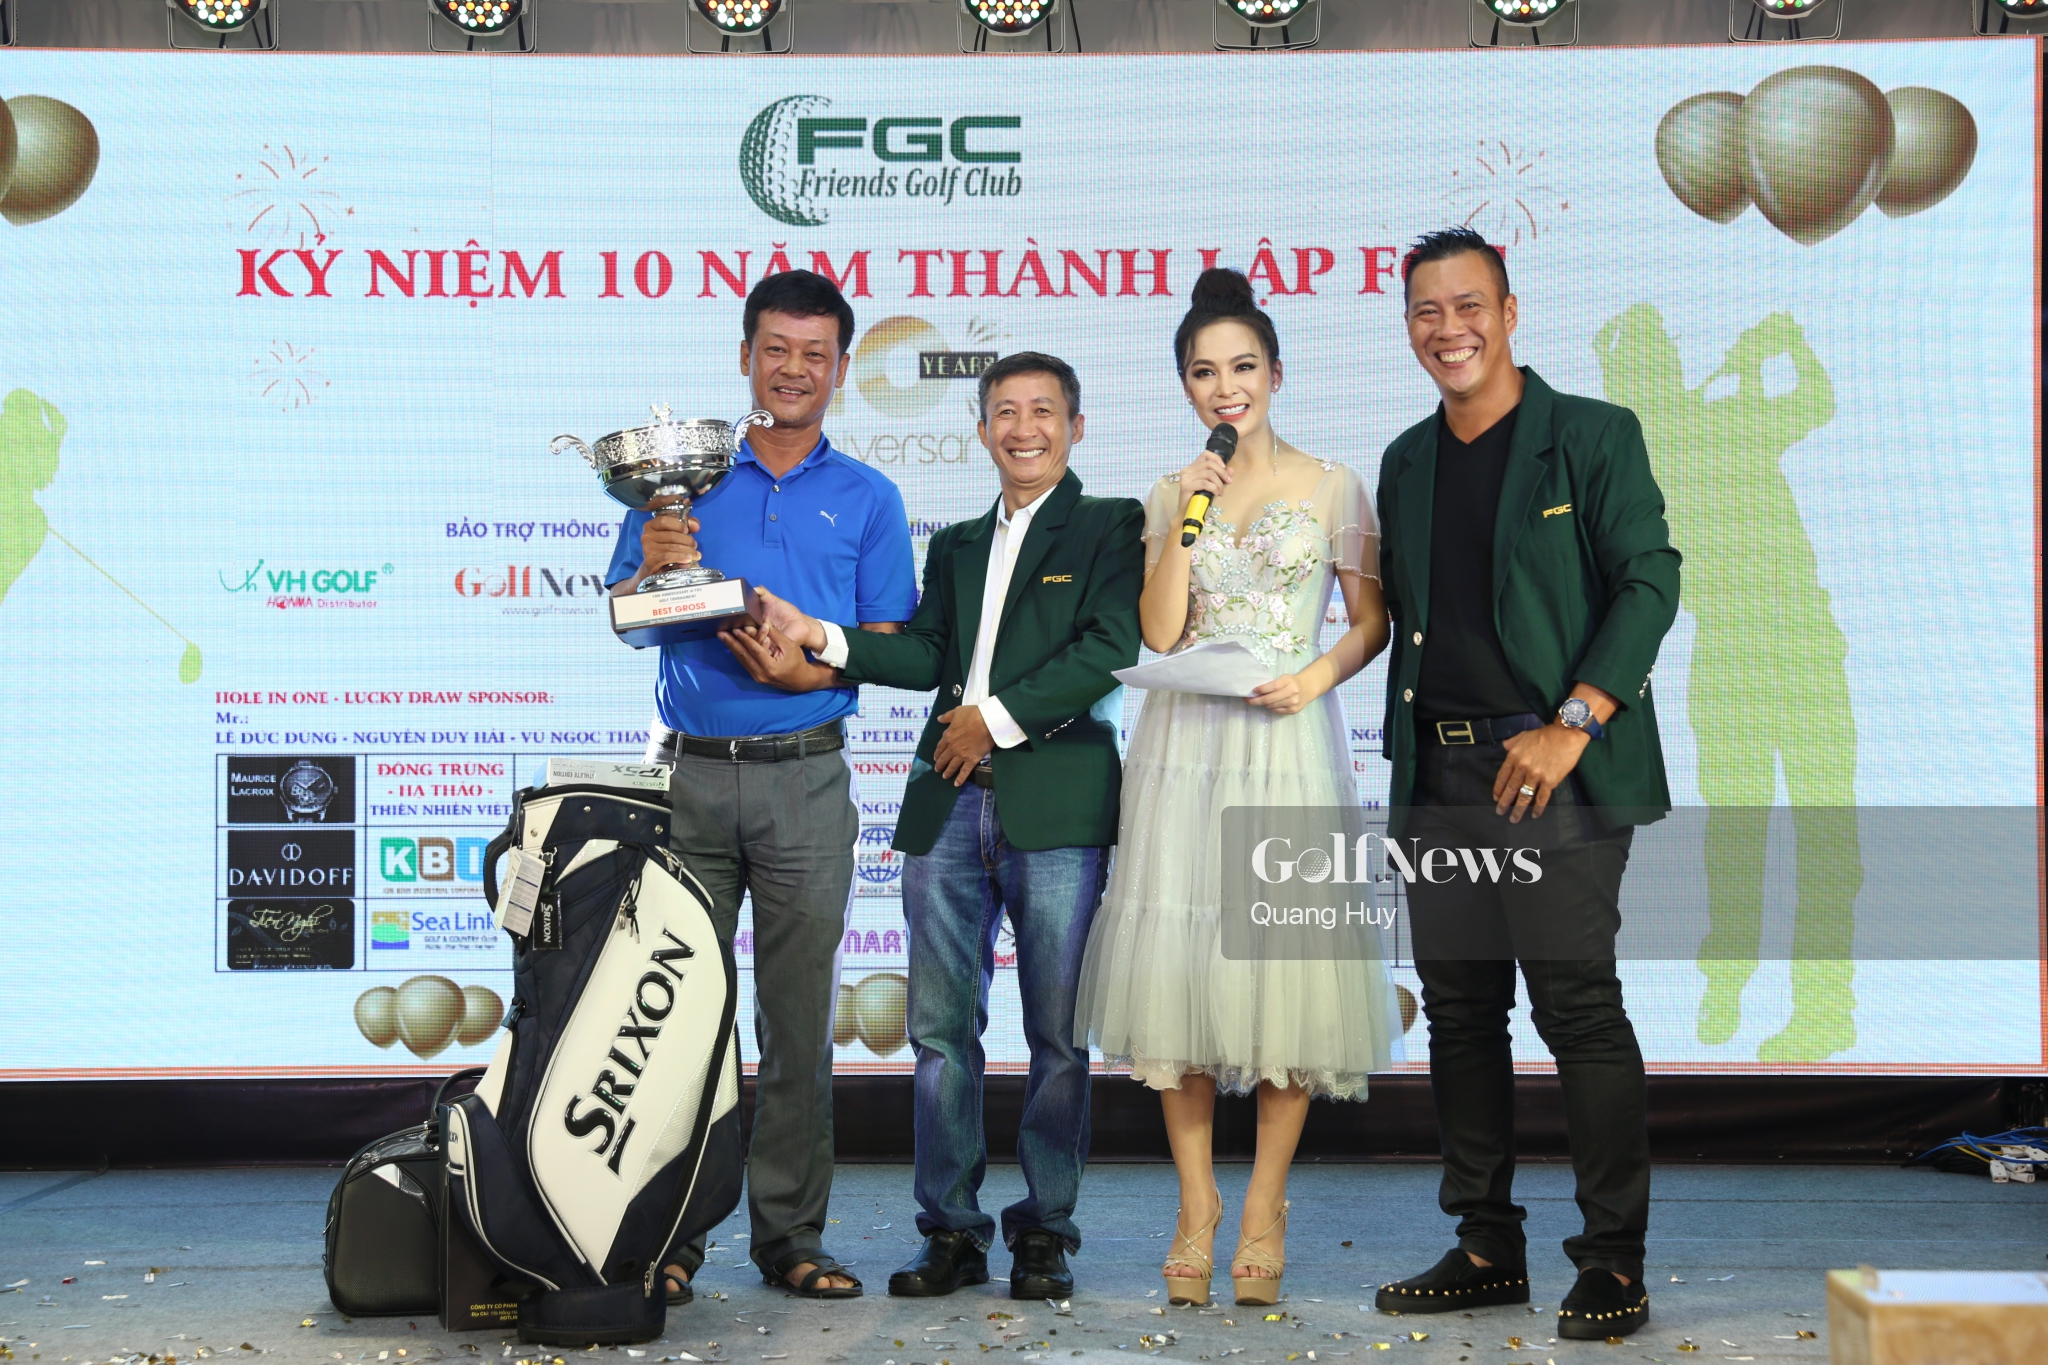 Vinh quang tại giải golf Mừng kỷ niệm 10 năm thành lập CLB FGC gọi tên golfer Lê Hồng Sơn